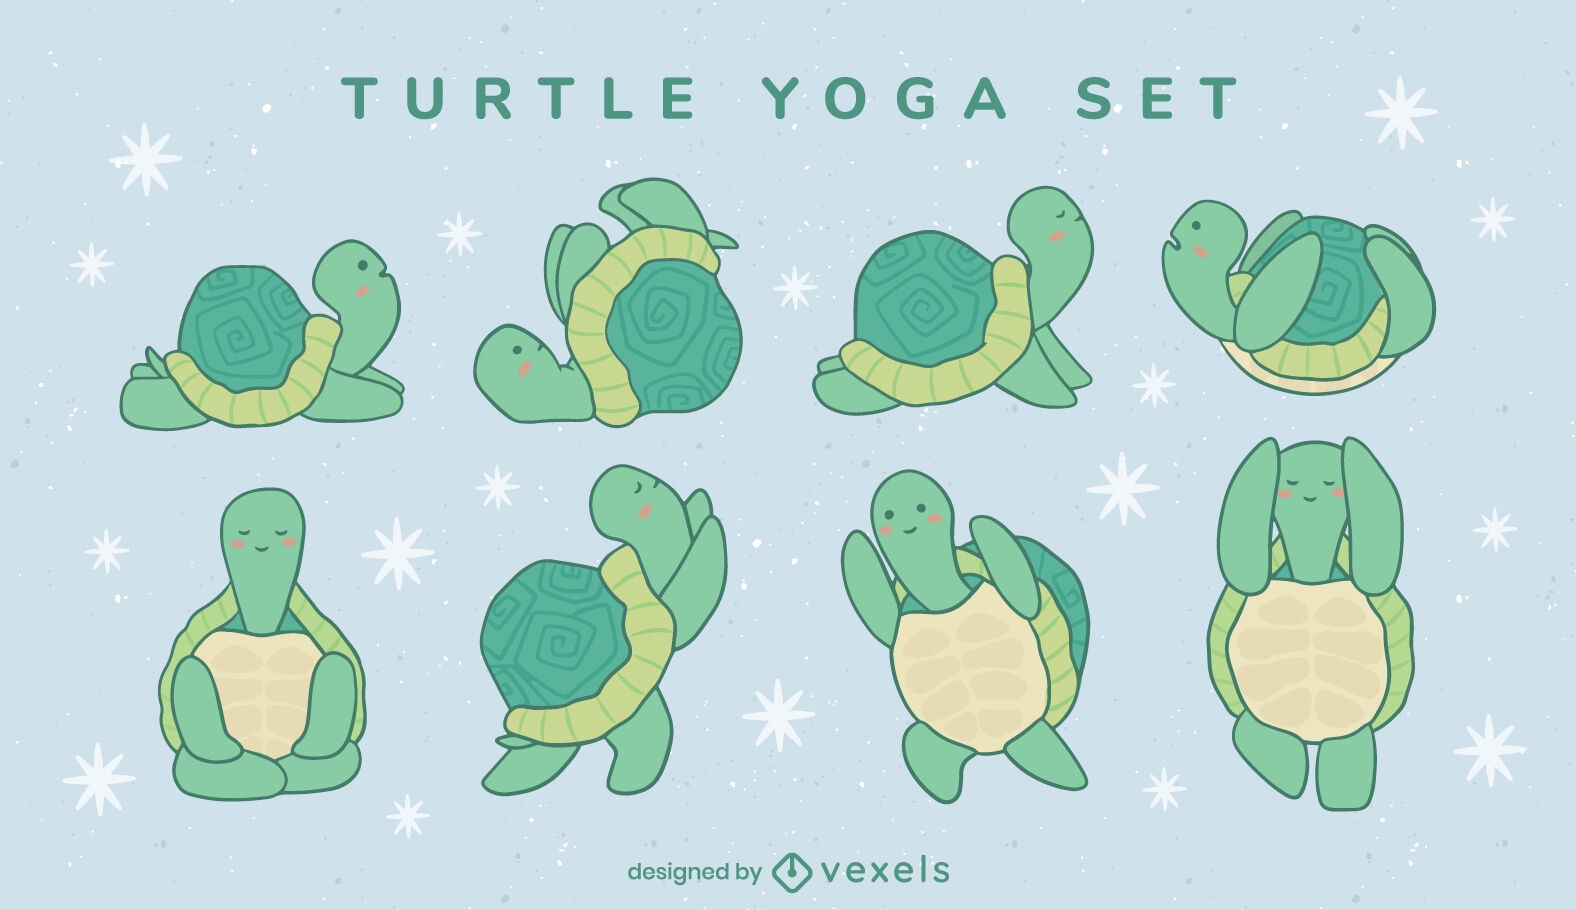 Turtle yoga character set